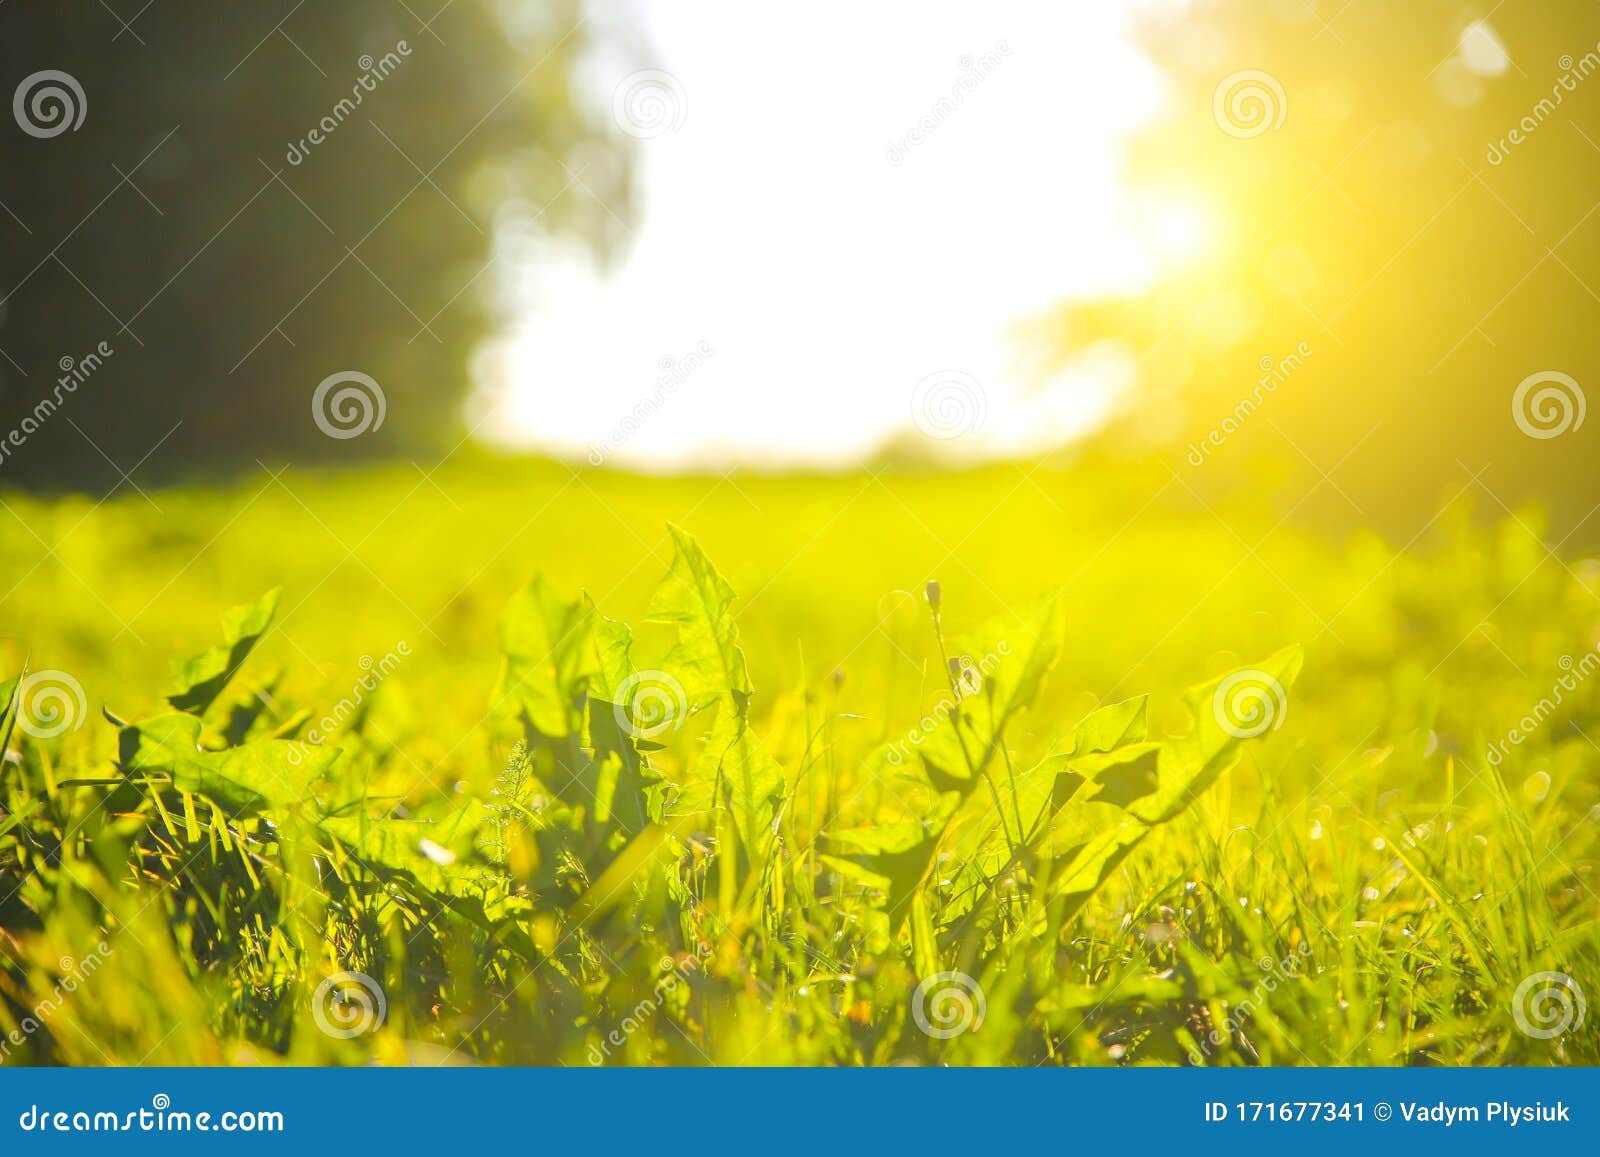 日落灯下的户外绿草阳光明媚的日子里 夏日春草地的风景自然生态友好照片壁纸库存图片 图片包括有阳光明媚的日子里 夏日春草地的风景 壁纸